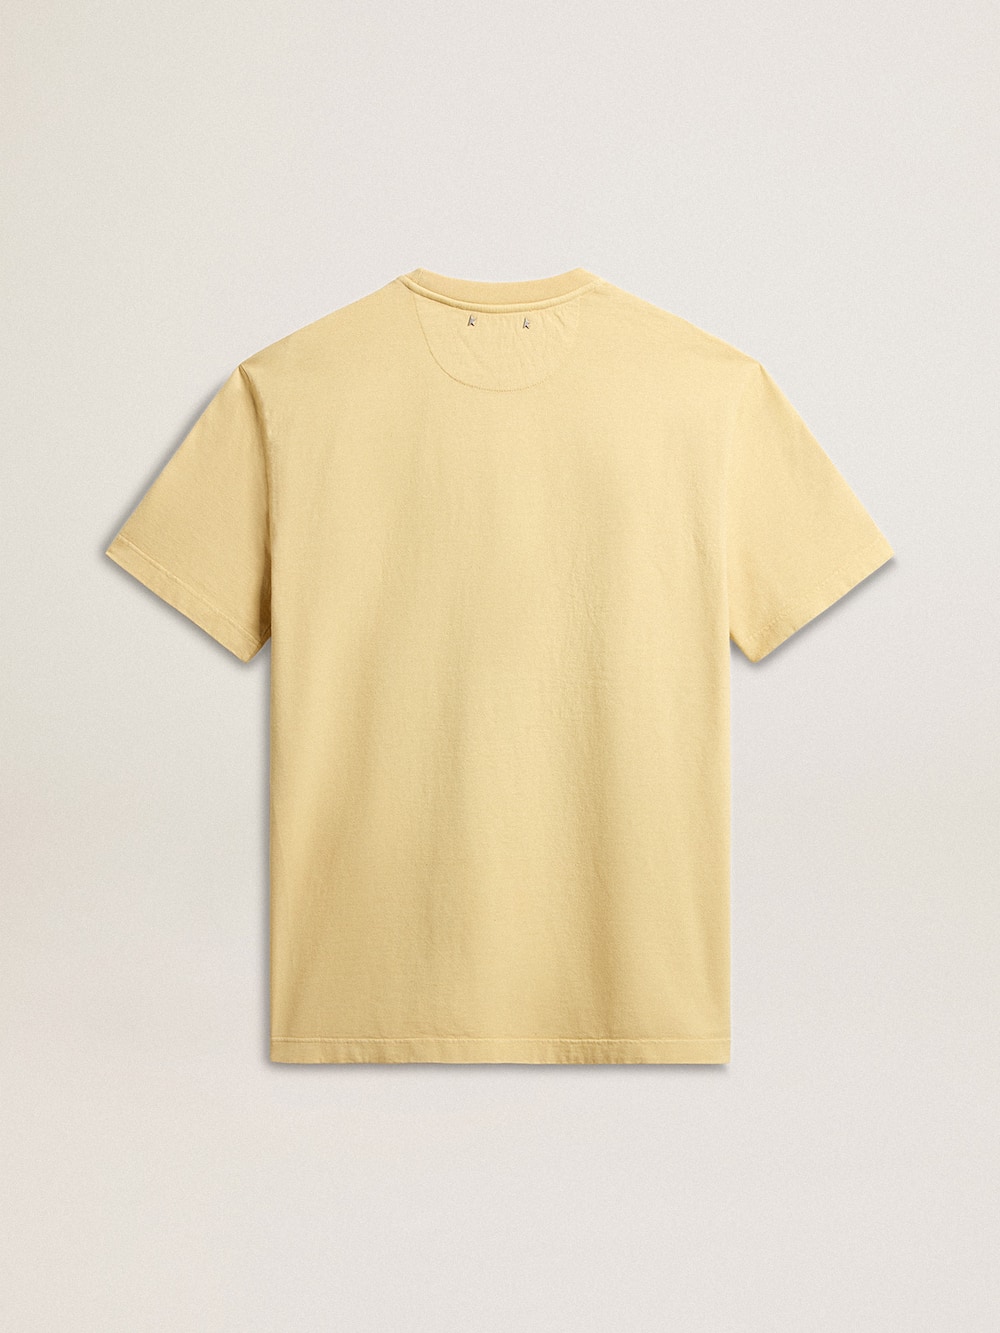 Golden Goose - Camiseta de hombre en algodón color amarillo pálido con mensaje descolorido in 